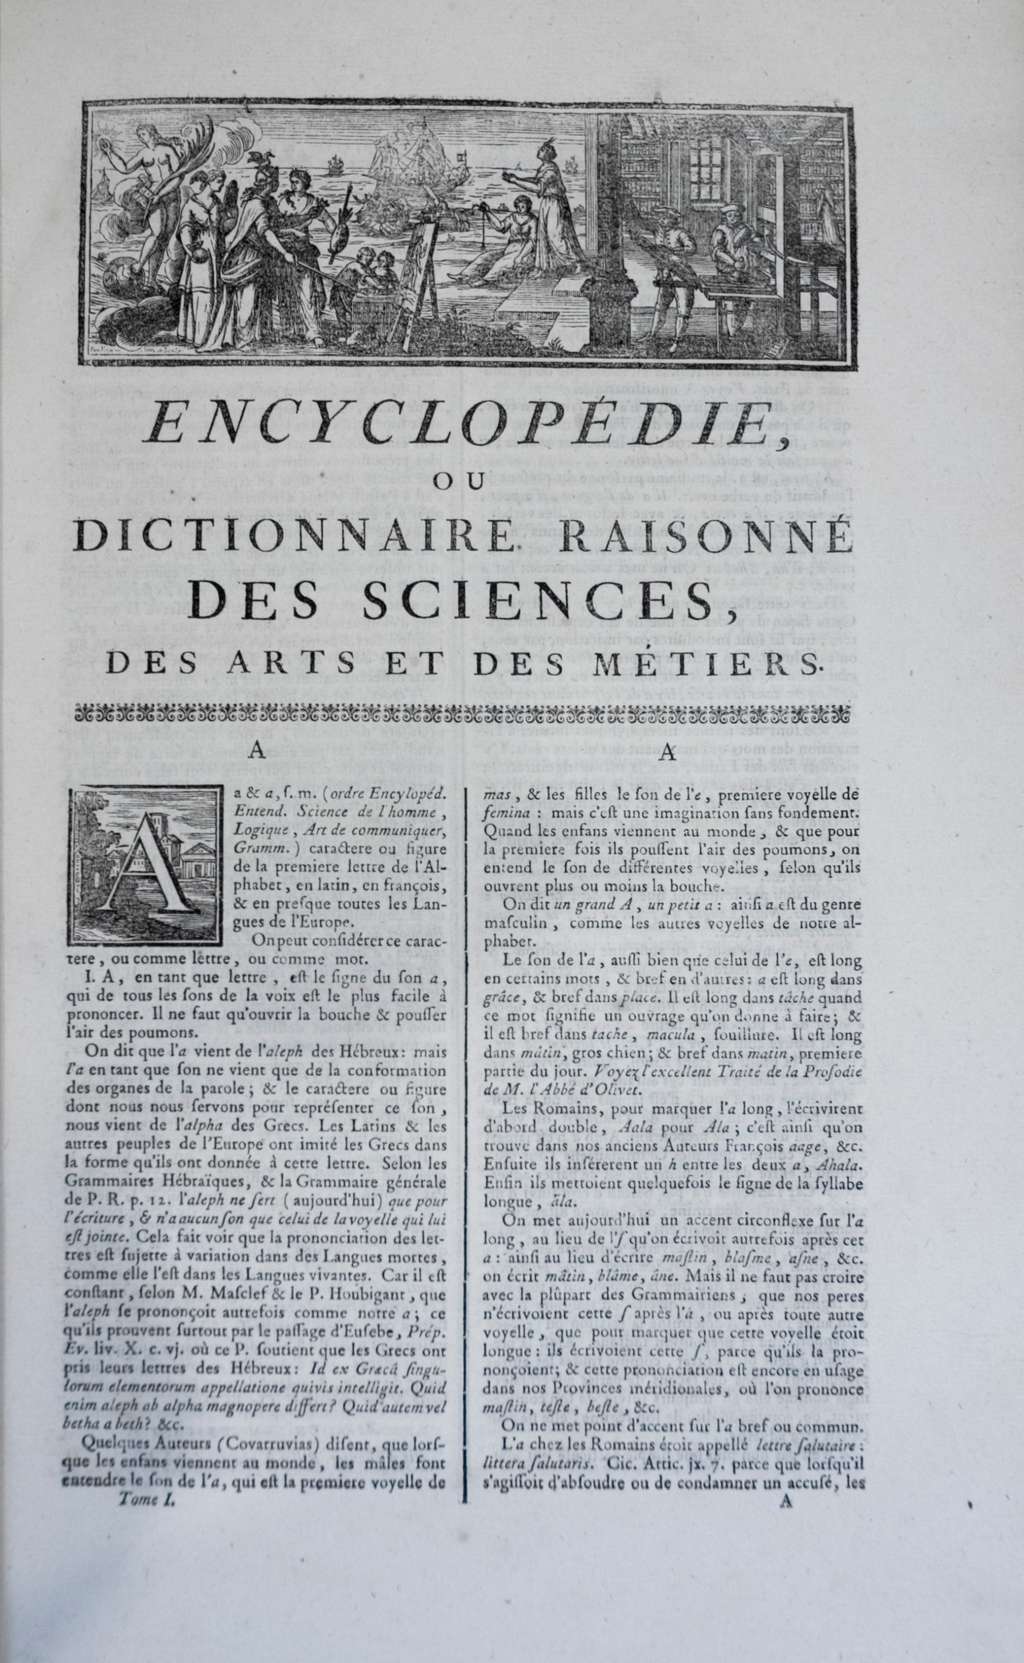 Encyclopédie ou Dictionnaire raisonné des Sciences, des Arts et des Métiers, première édition en 1751, par Diderot et d’Alembert. Ouvrage en 17 volumes de textes et 11 volumes de planches. © <em>Wikimedia Commons</em>, domaine public.